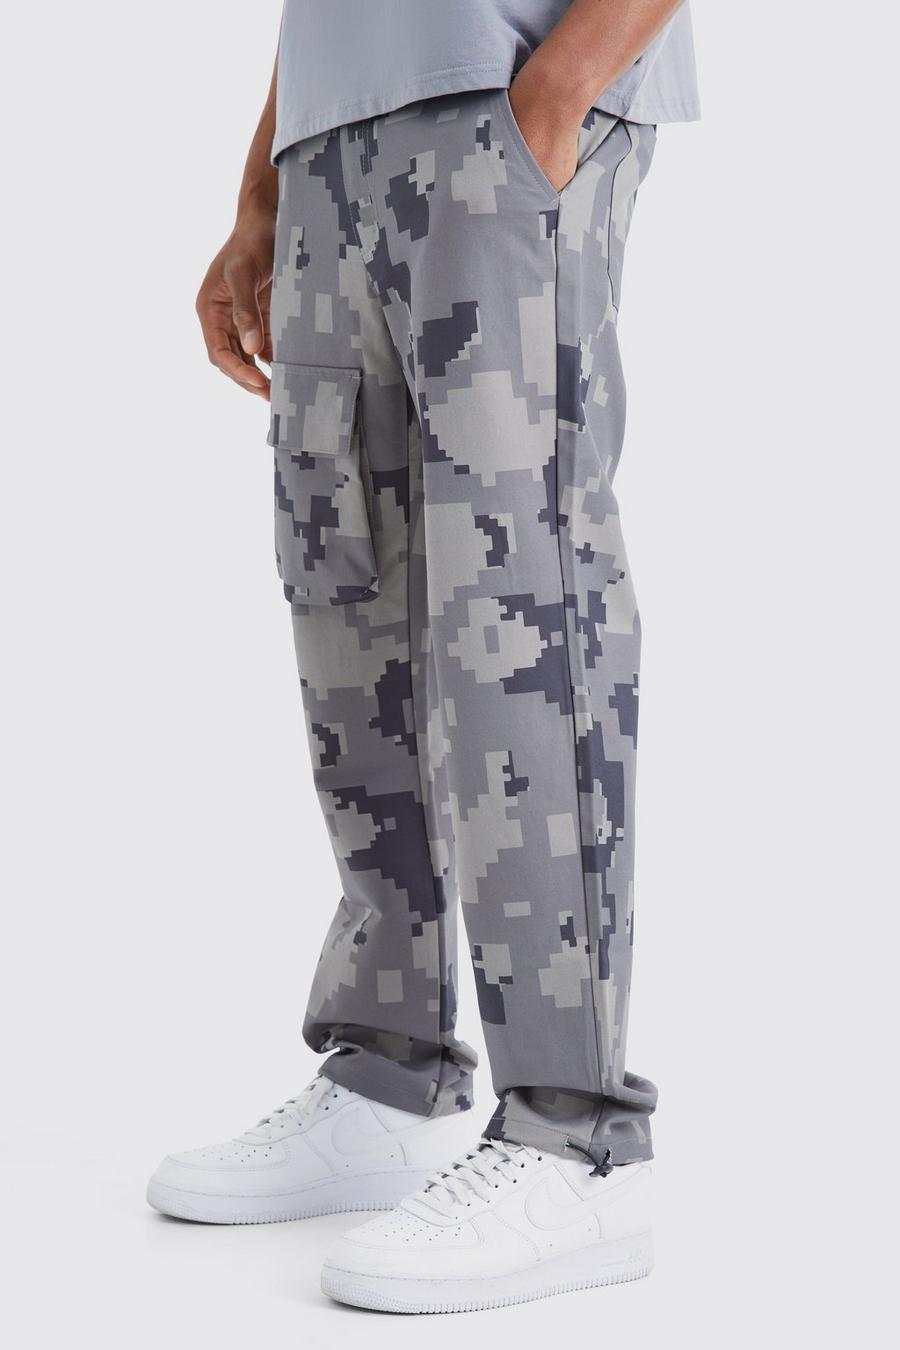 Pantaloni dritti in fantasia militare effetto pixel con tasche Cargo, Charcoal